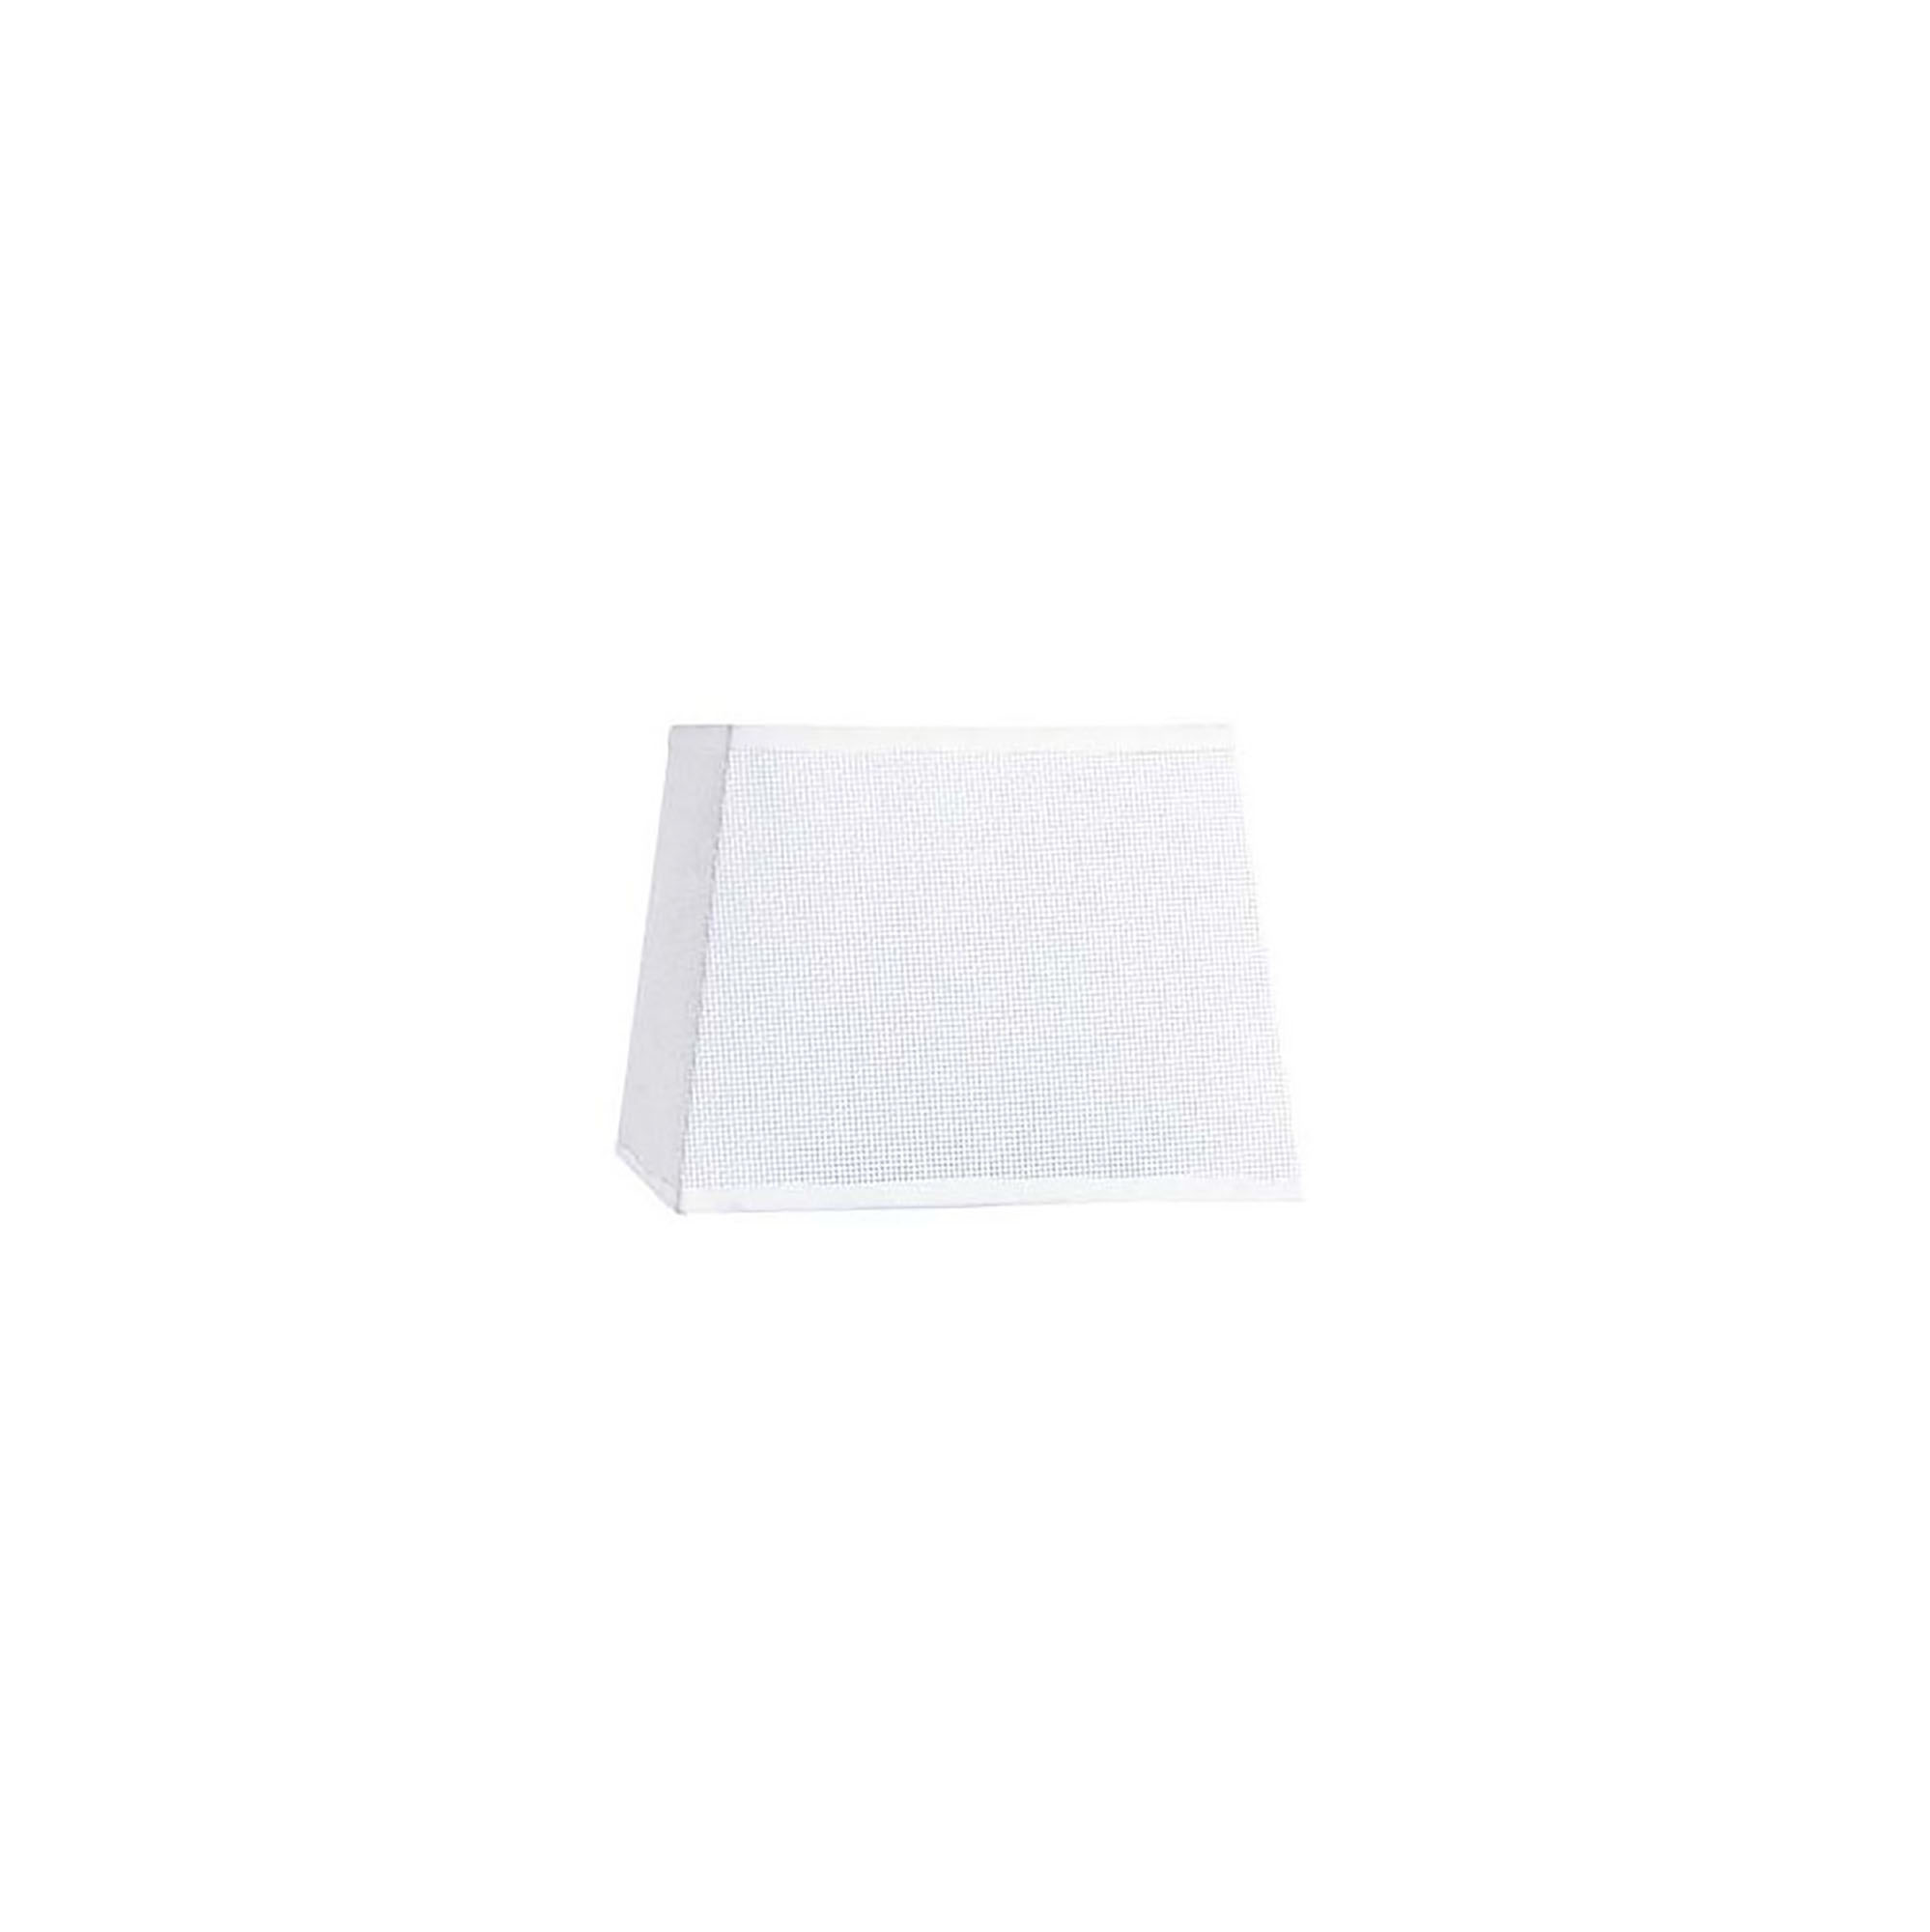 M5324  Habana 24cm Square Fabric Shade White